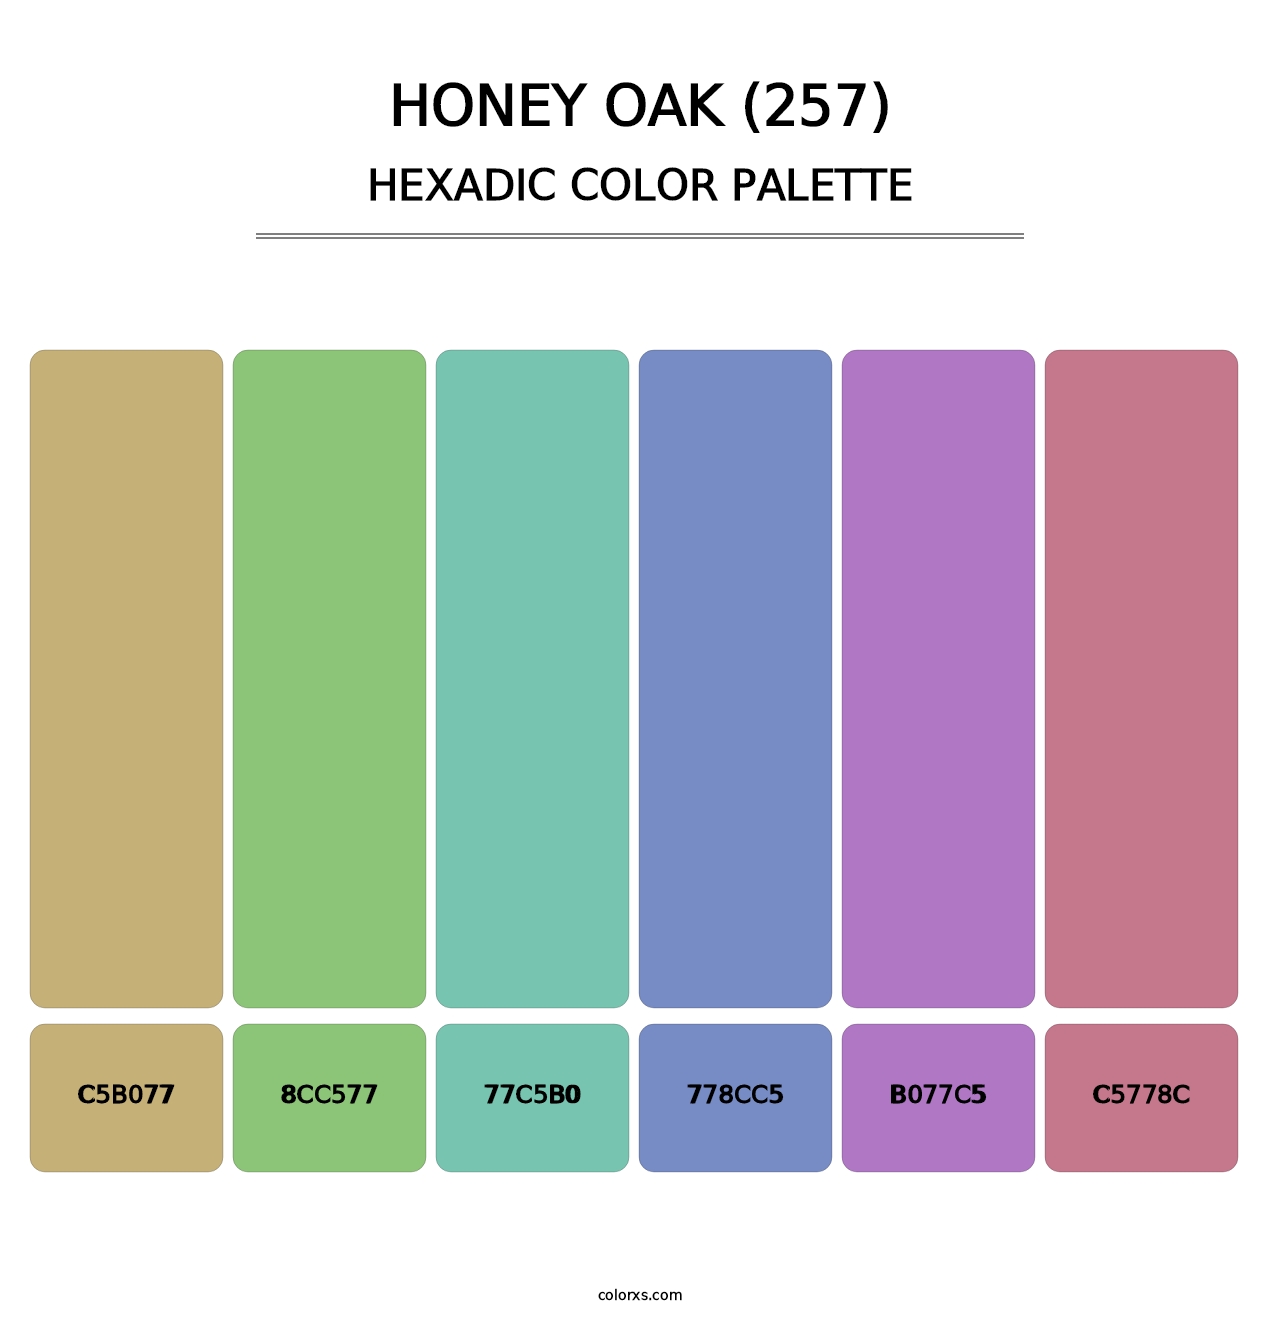 Honey Oak (257) - Hexadic Color Palette